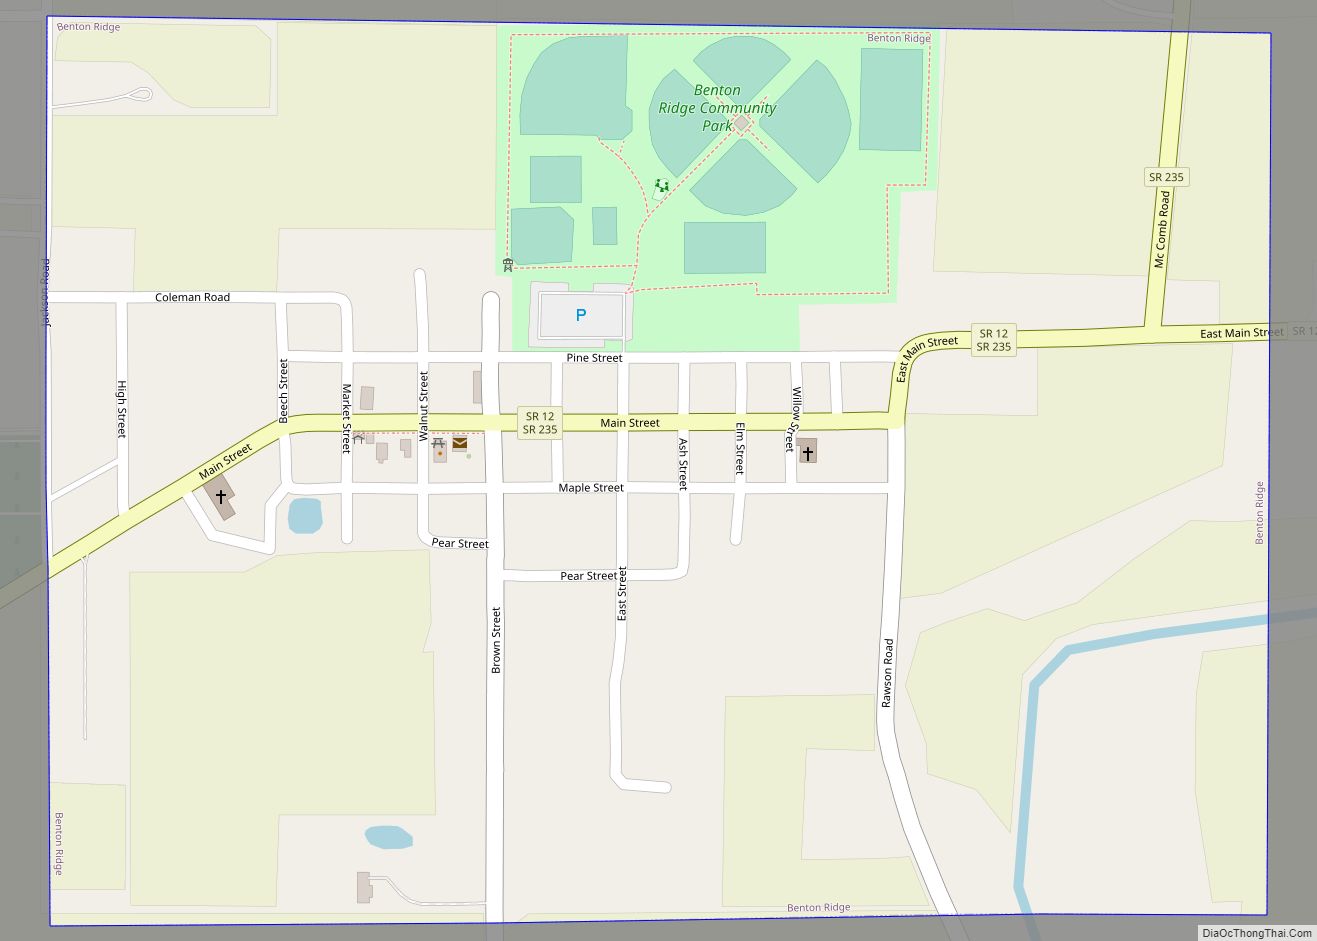 Map of Benton Ridge village